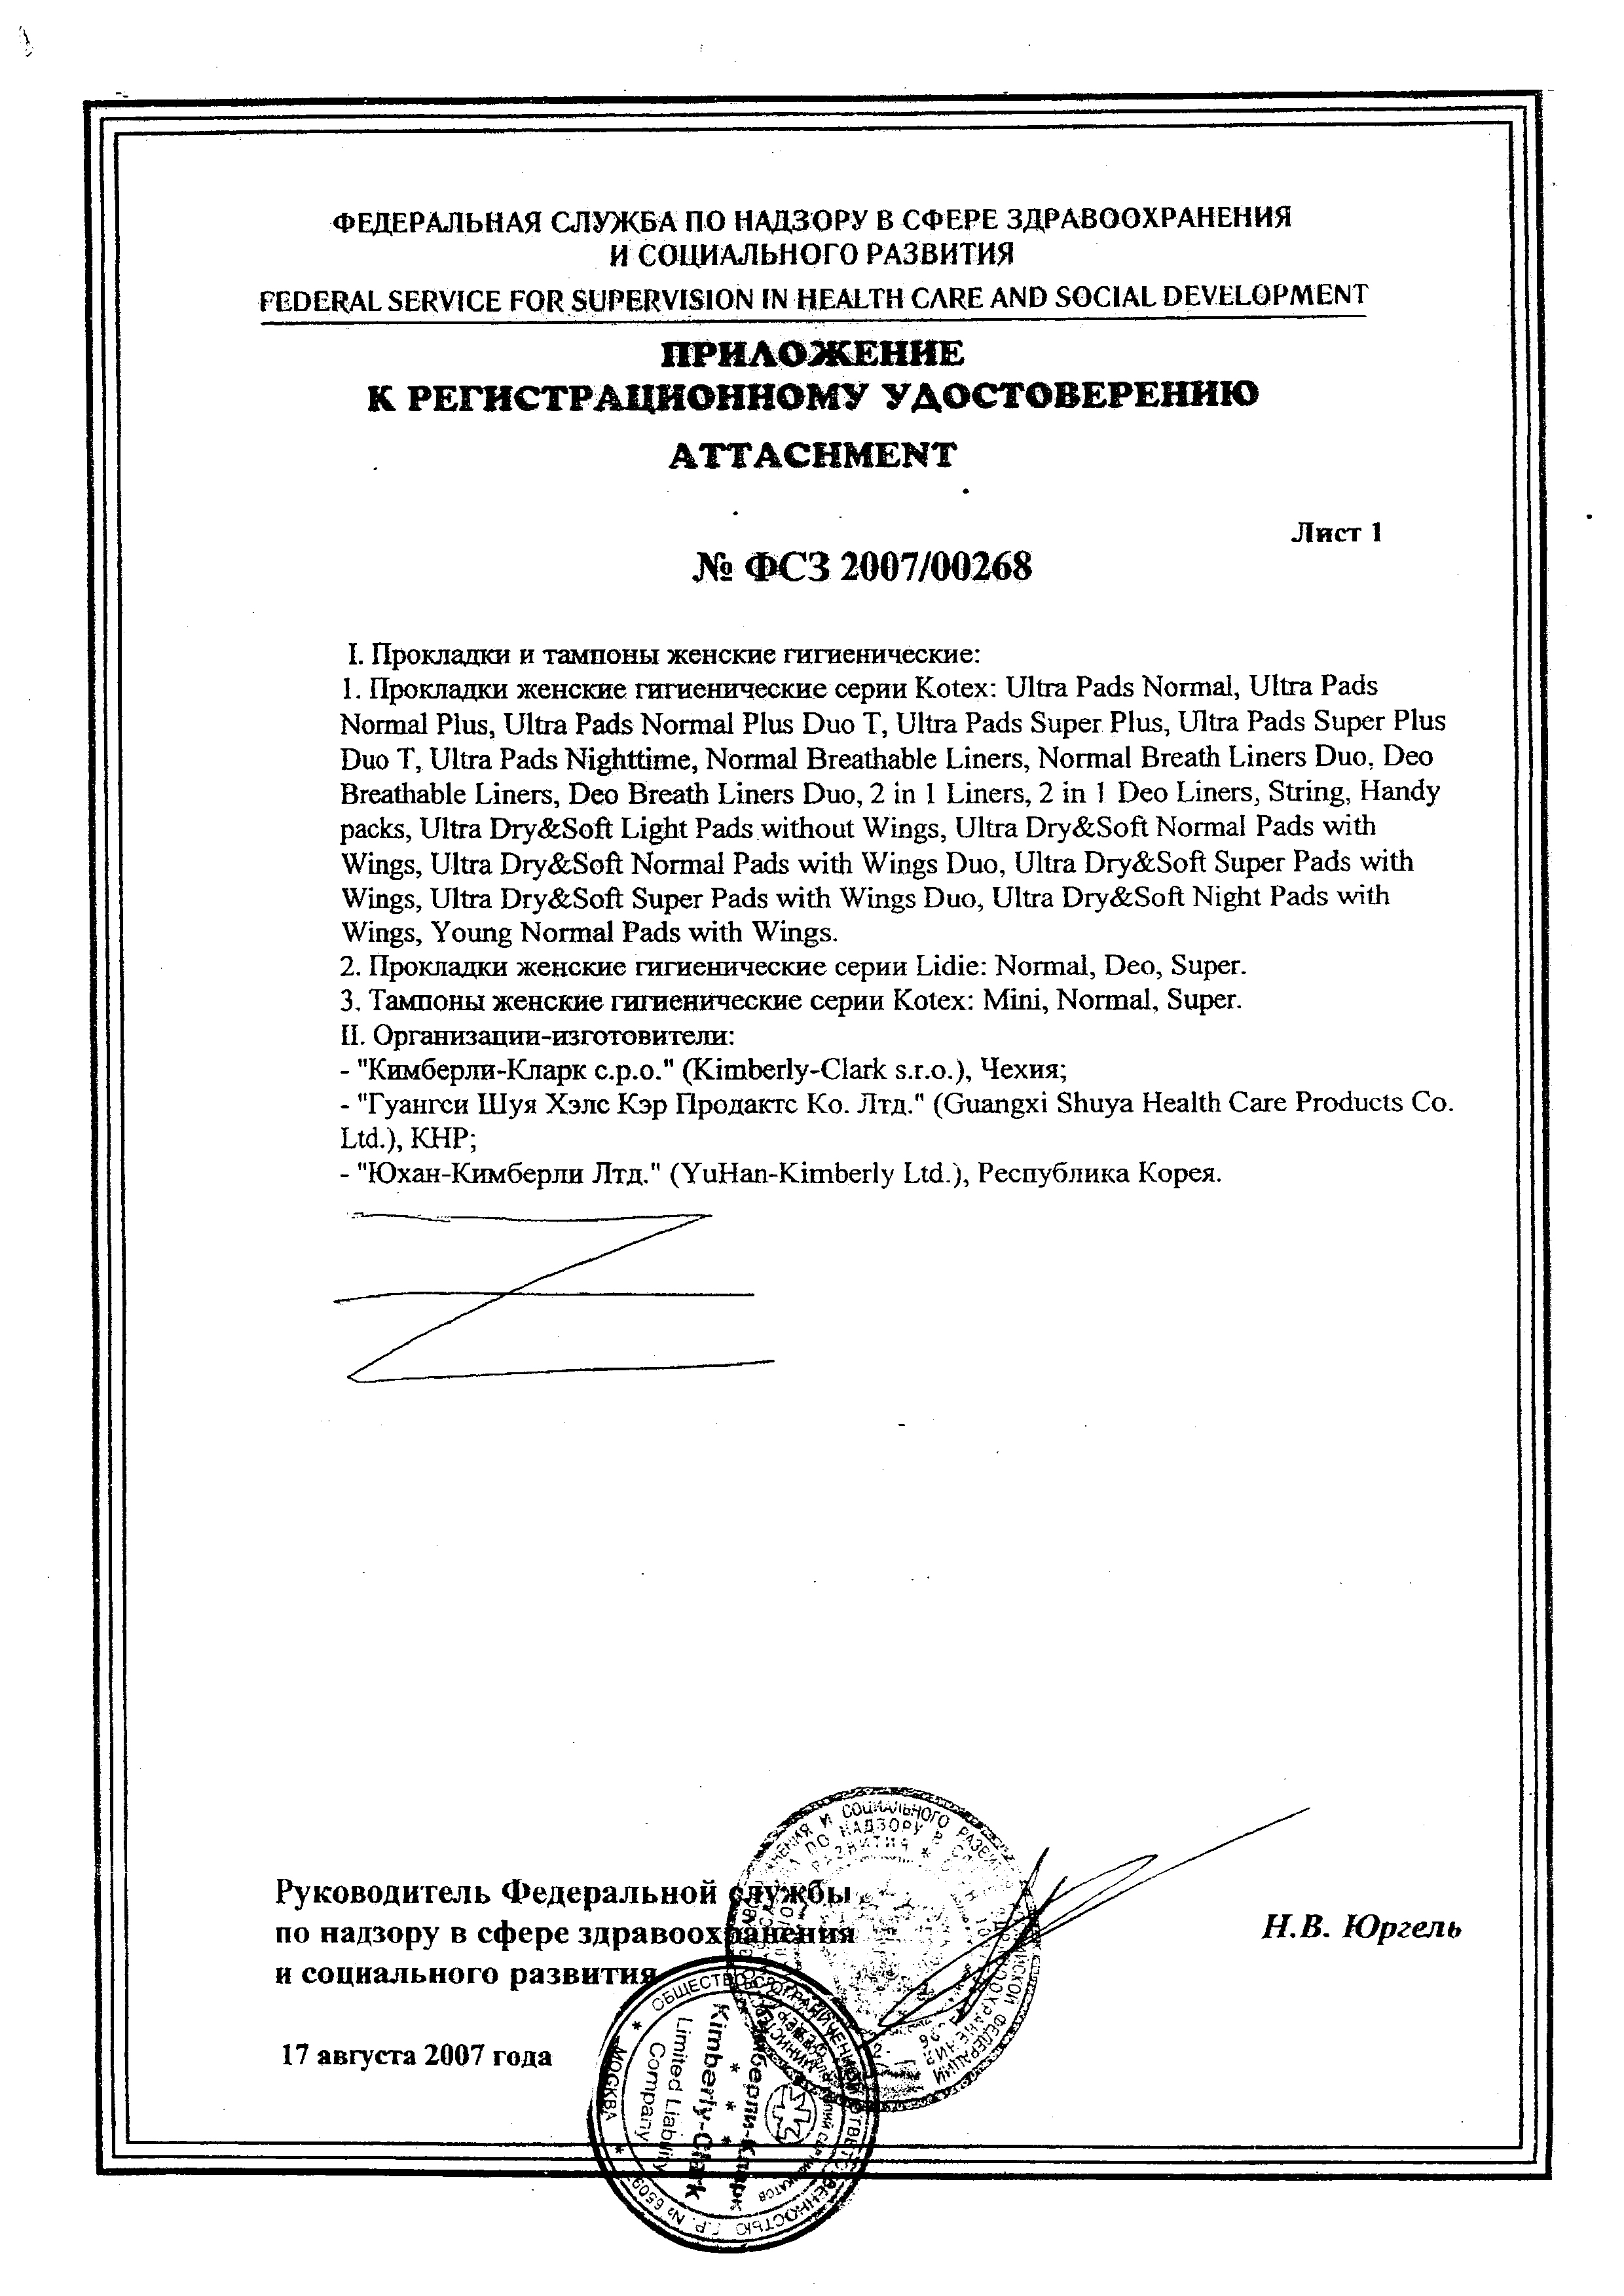 Kotex Normal тампоны женские гигиенические сертификат